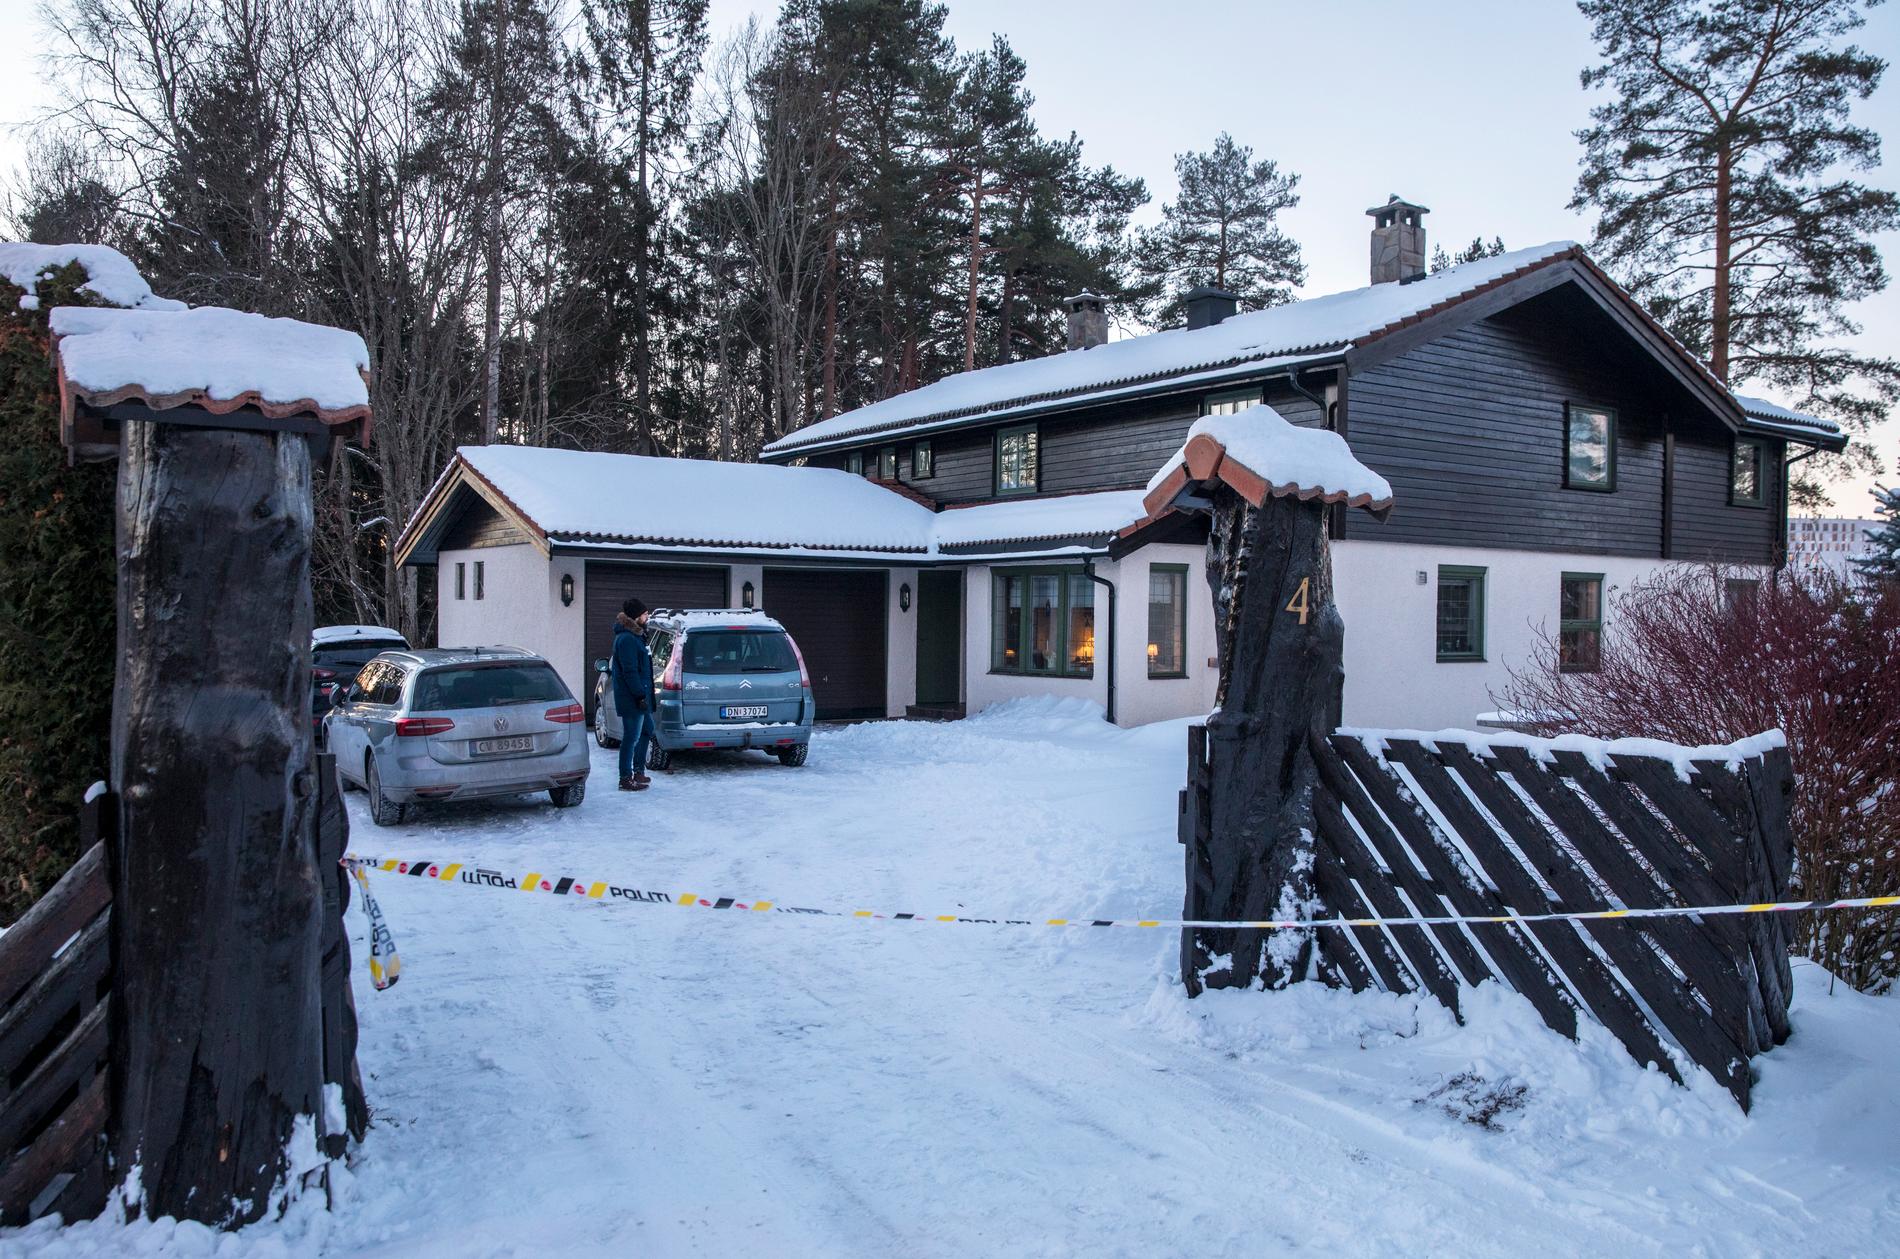  Anne-Elisabeth Falkevik Hagen, som är gift med en av Norges rikaste män, har varit försvunnen i tio veckor. Den 68-åriga kvinnan tros ha blivit bortförd mot sin vilja. Hon såg senast vid sitt hem den 31 oktober förra året.